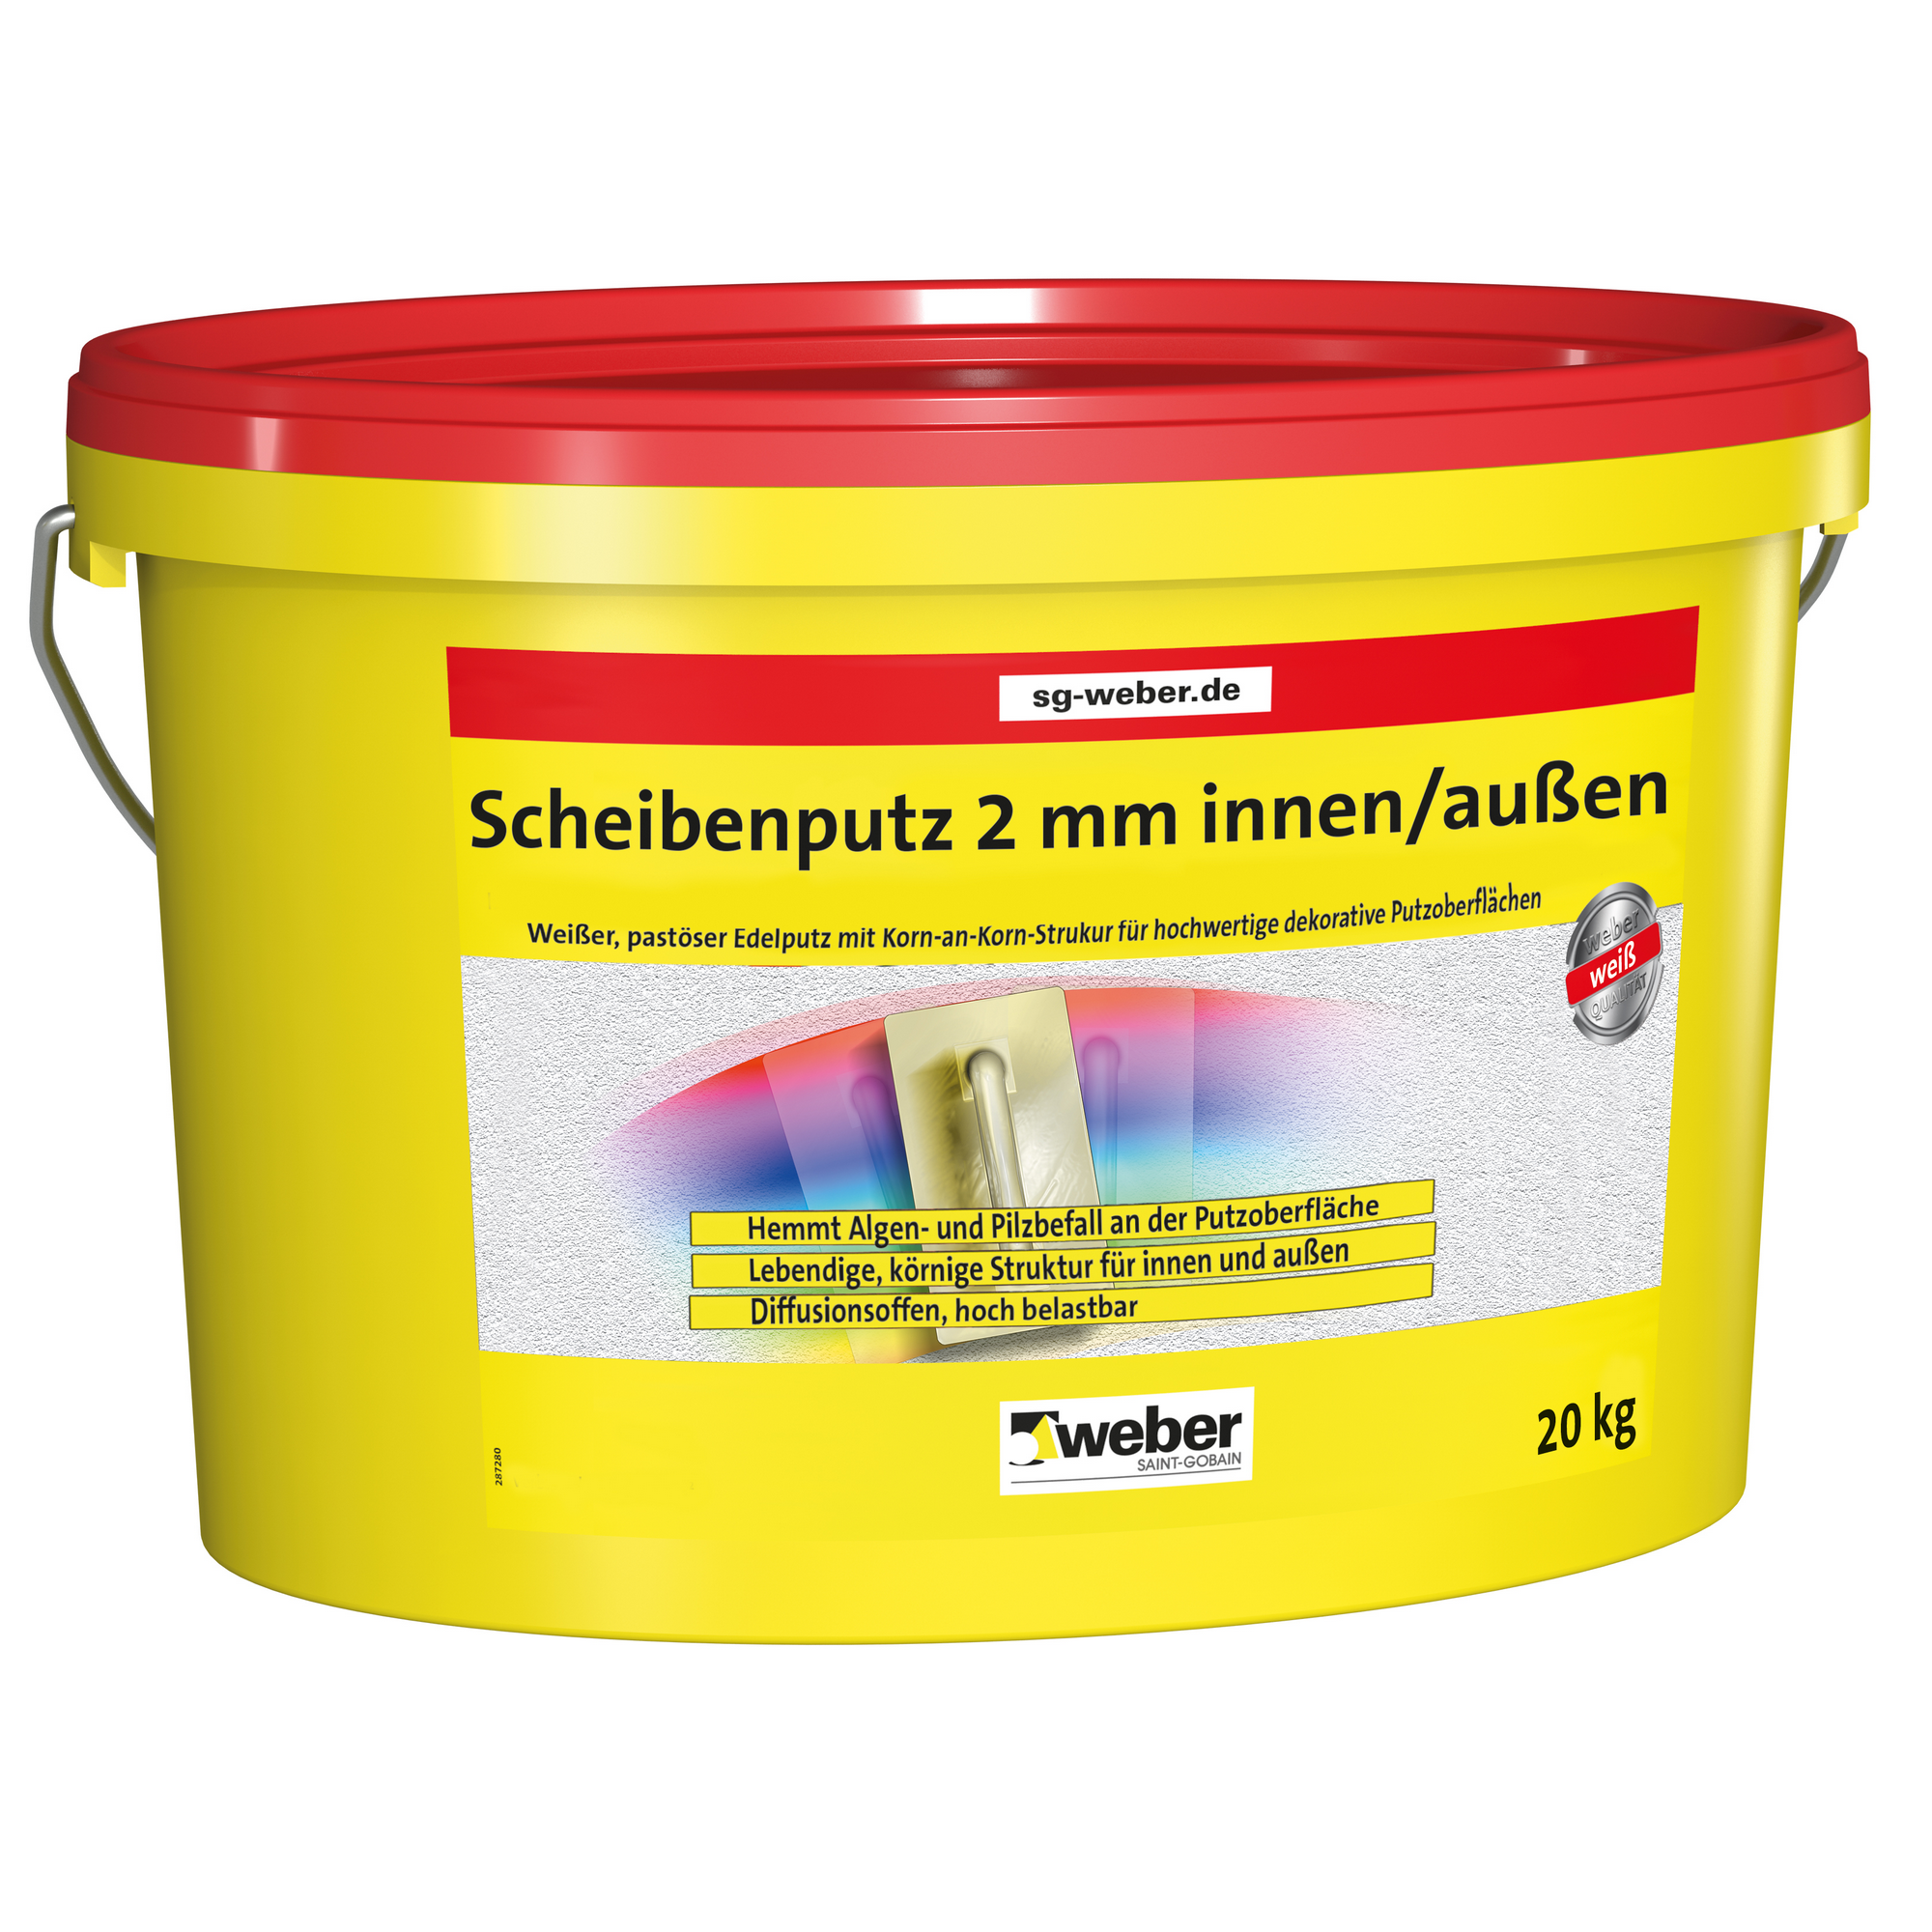 Scheibenputz 20 kg + product picture